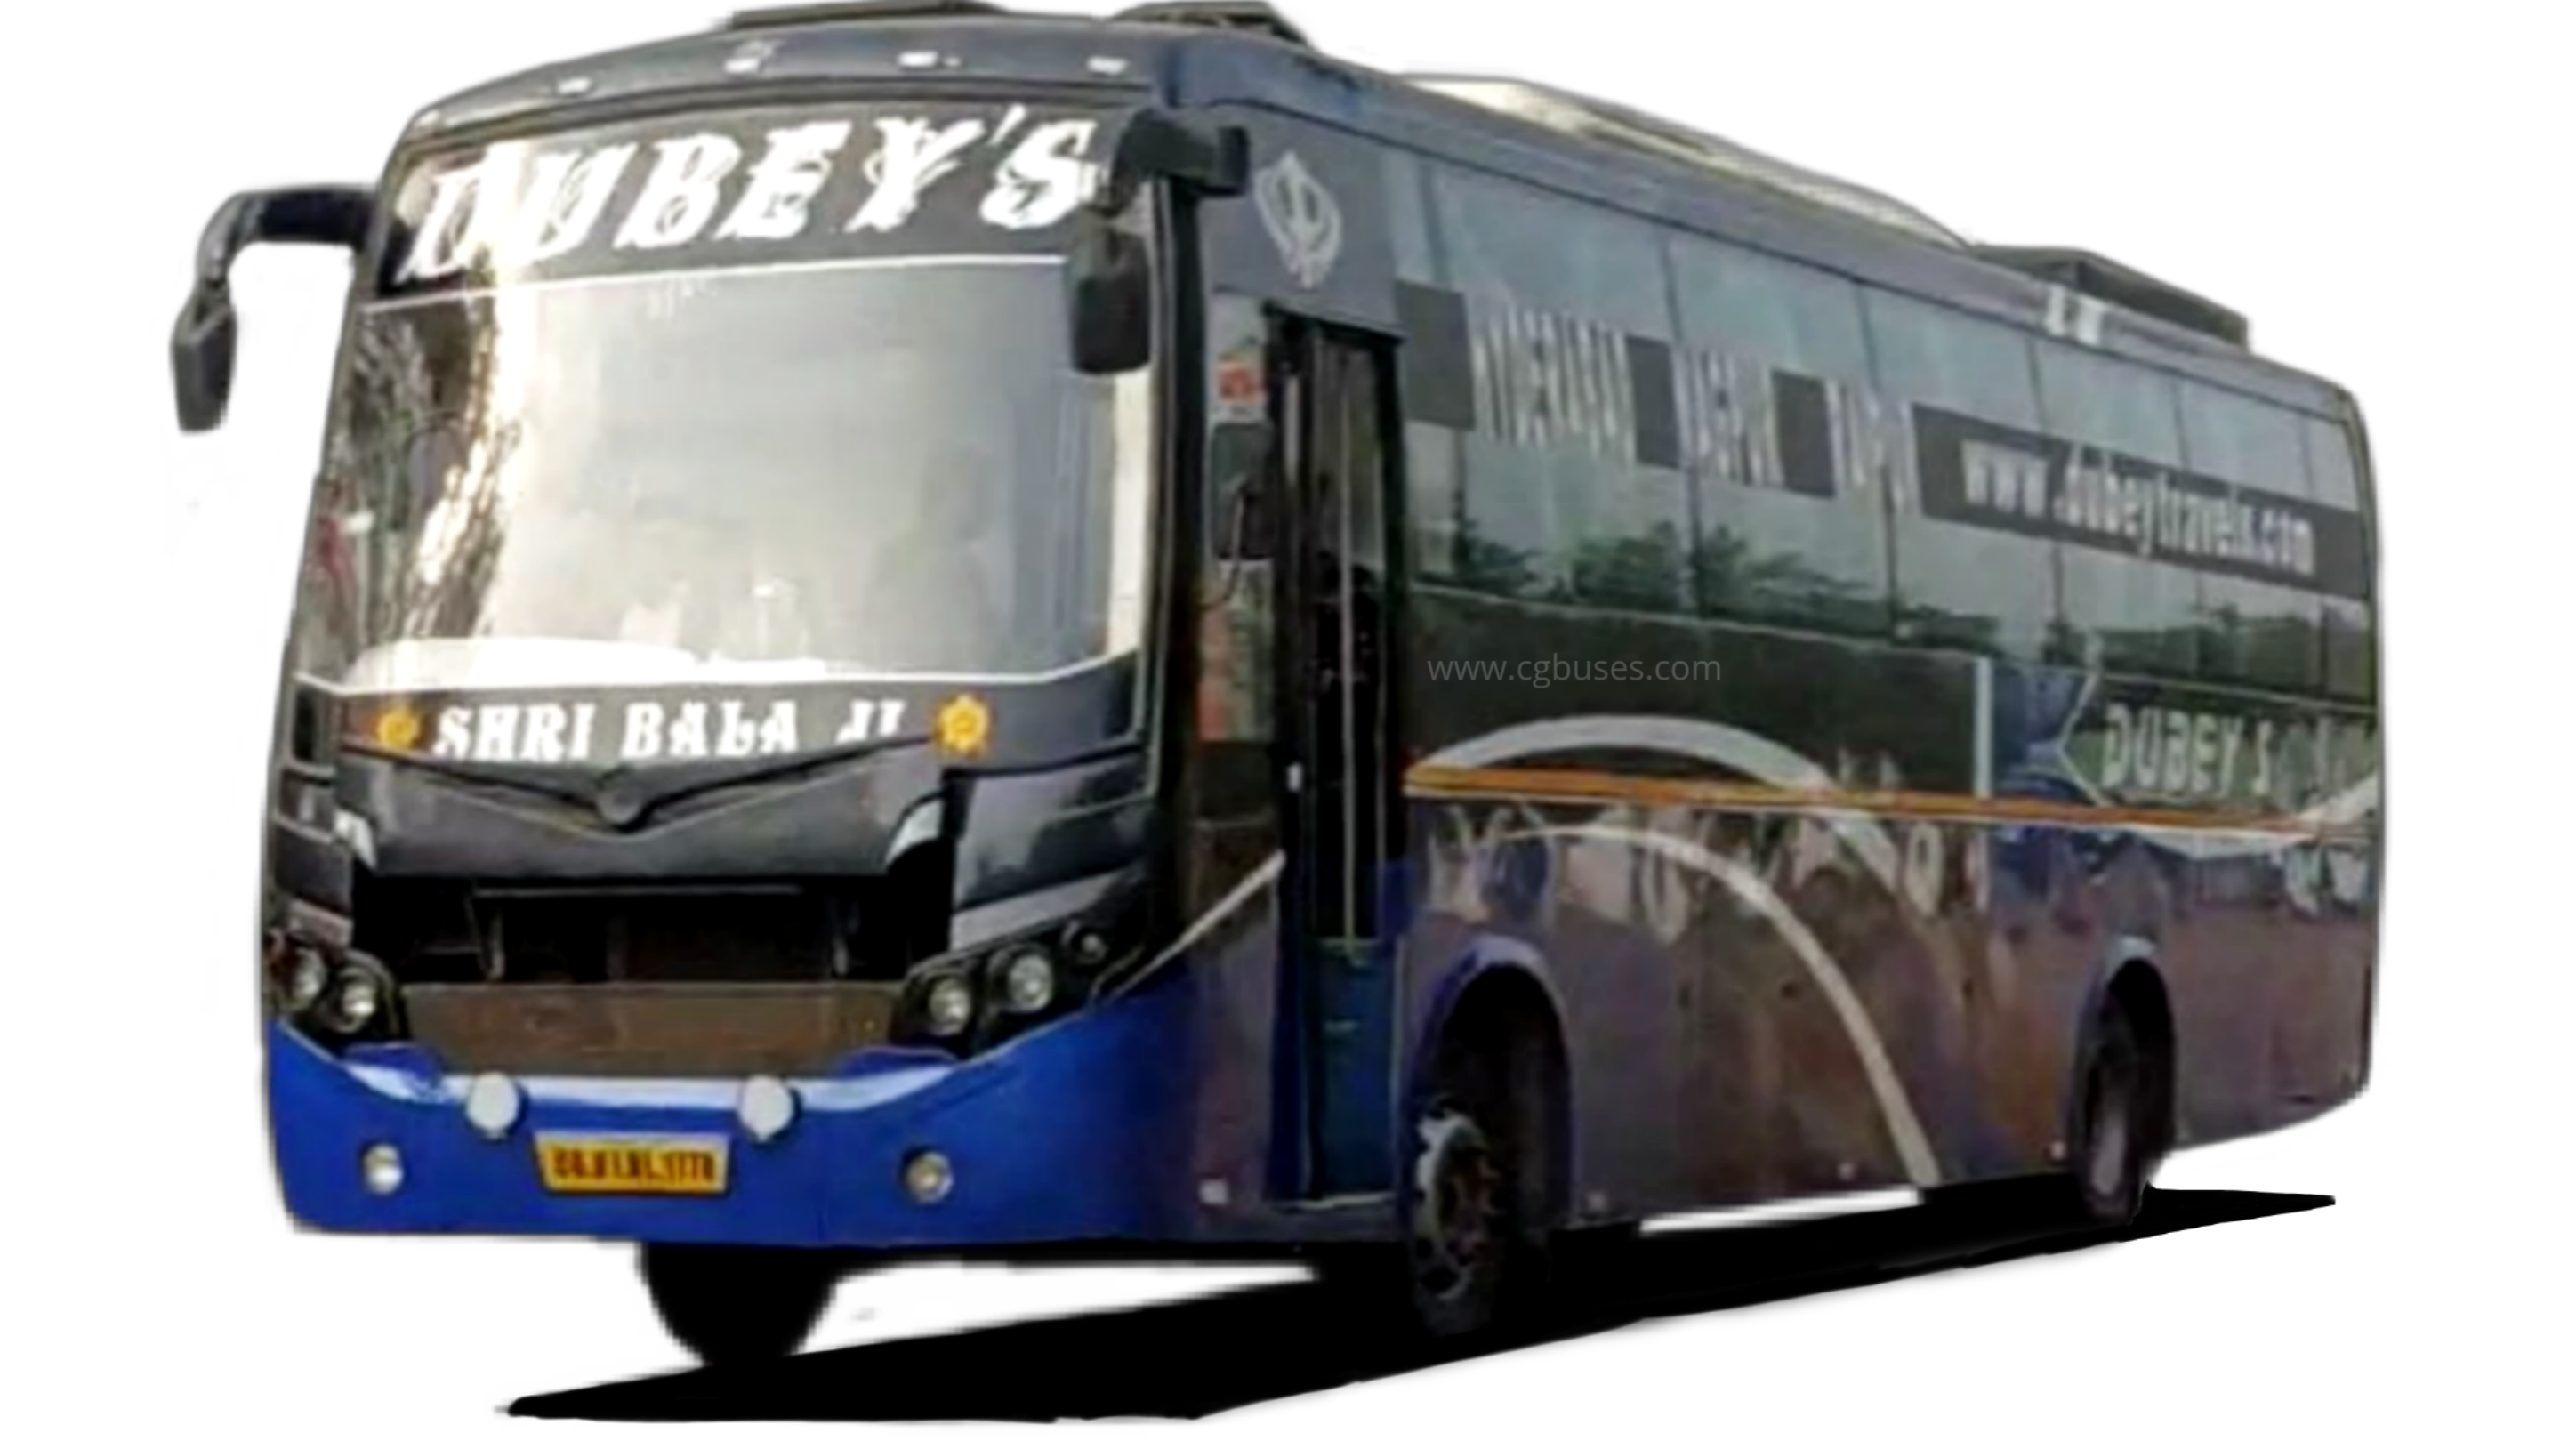 Dubey's Bus